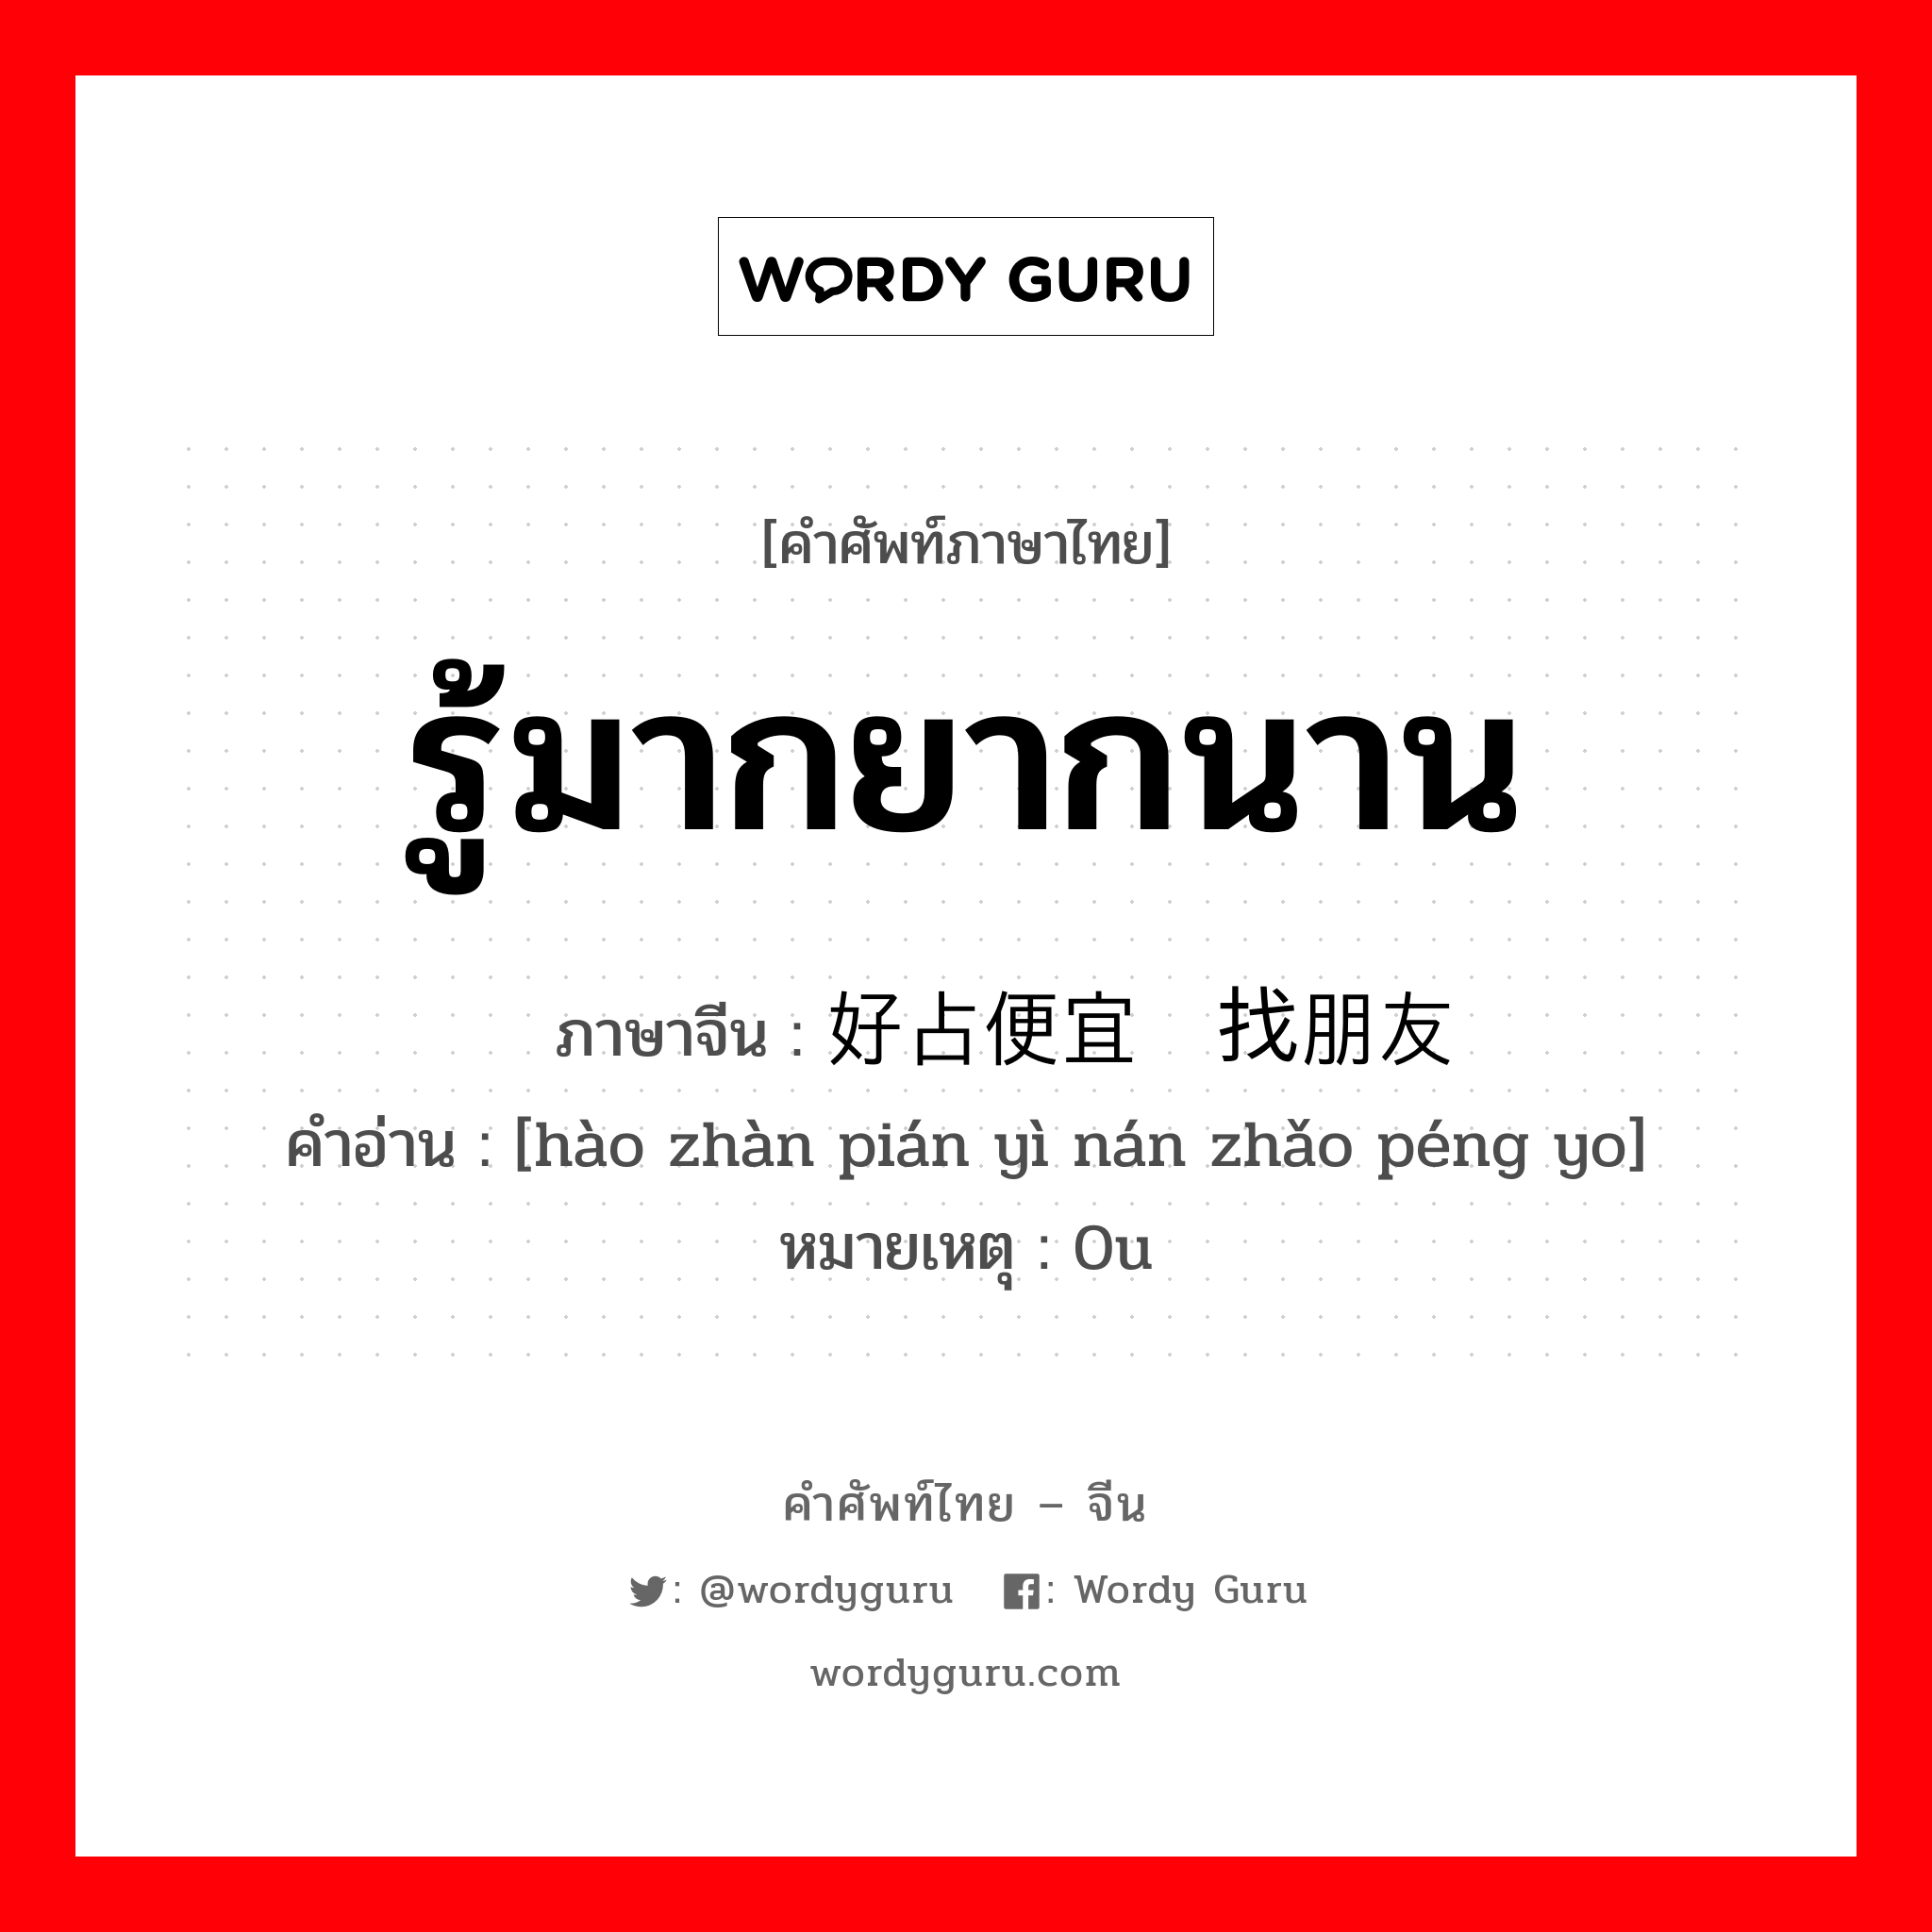 รู้มากยากนาน ภาษาจีนคืออะไร, คำศัพท์ภาษาไทย - จีน รู้มากยากนาน ภาษาจีน 好占便宜难找朋友 คำอ่าน [hào zhàn pián yì nán zhǎo péng yo] หมายเหตุ 0u